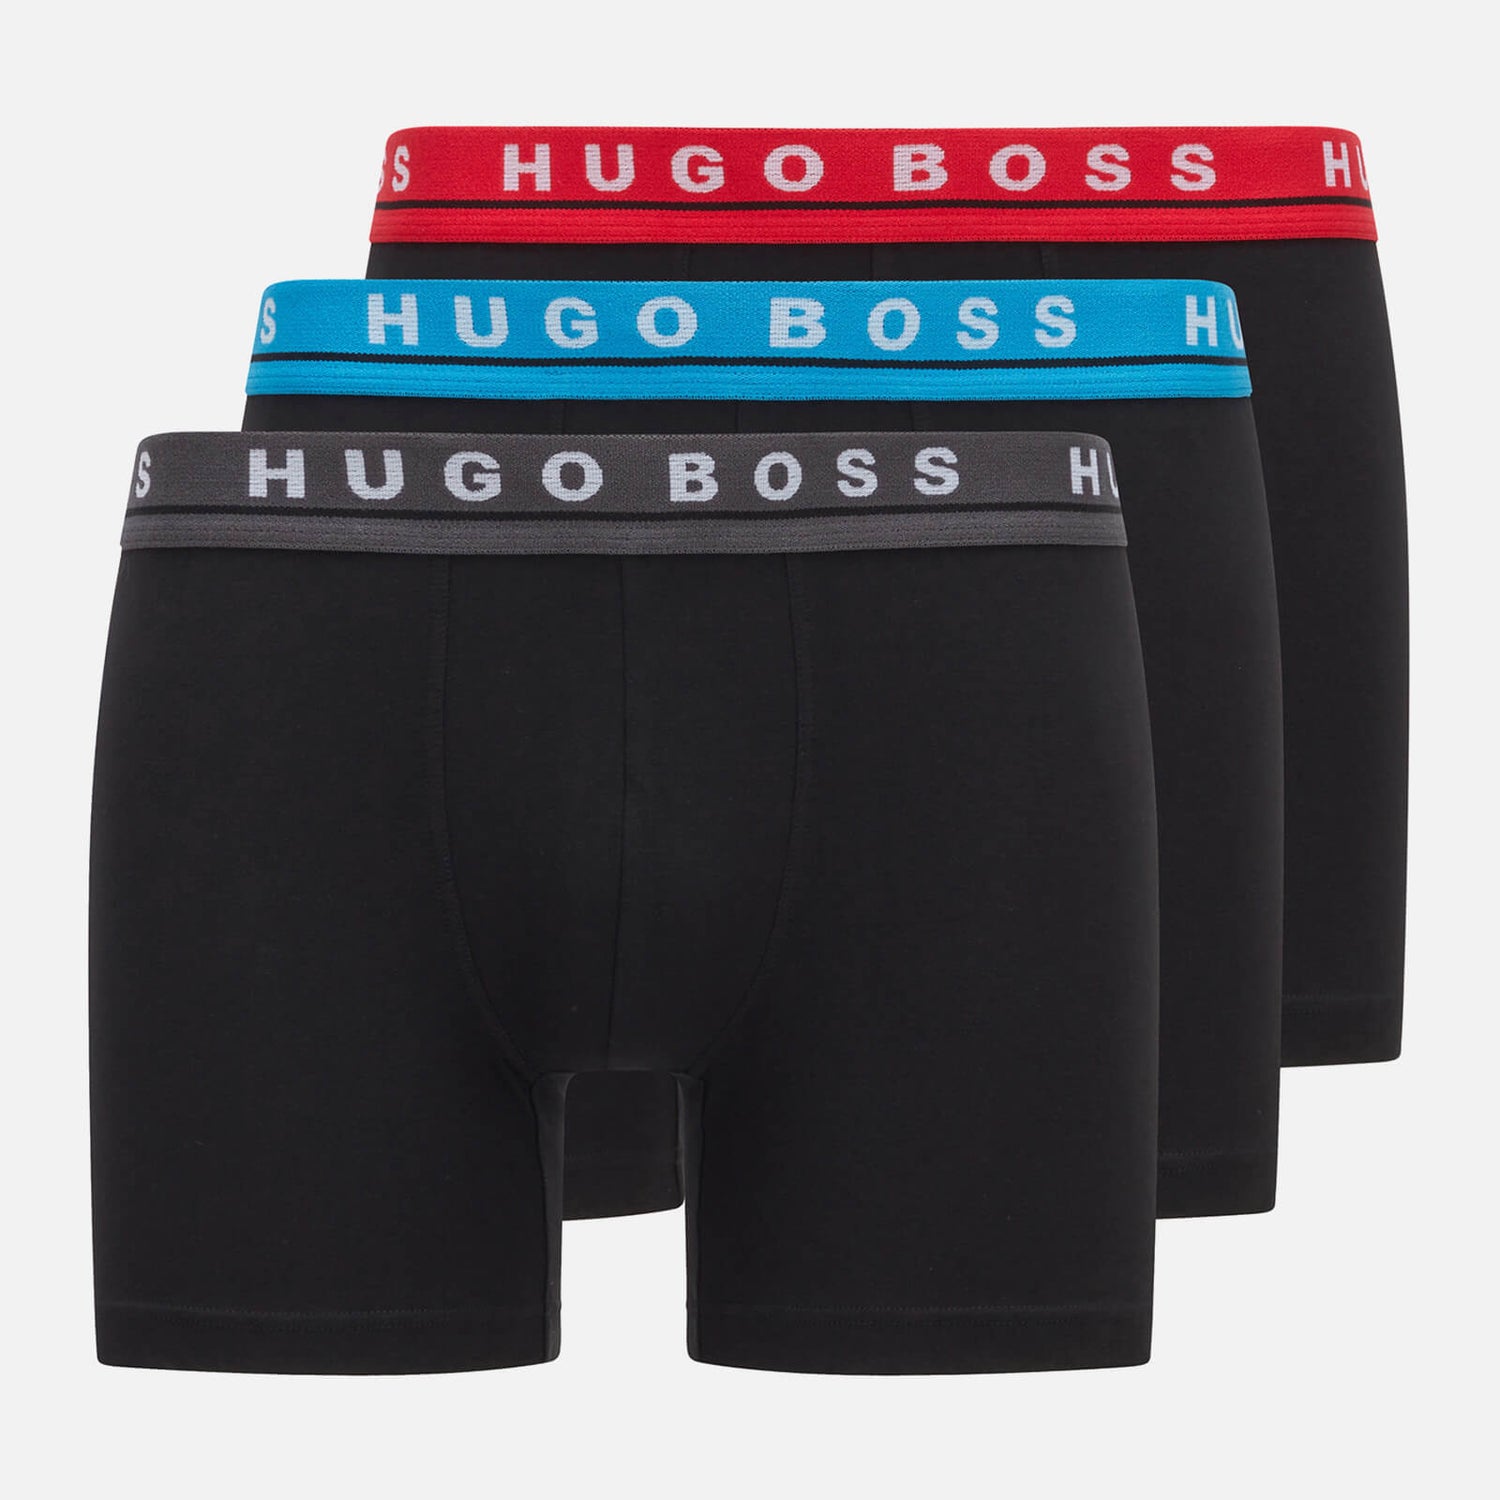 BOSS Bodywear Men's 3-Pack Boxer Briefs - Black/Multi - S